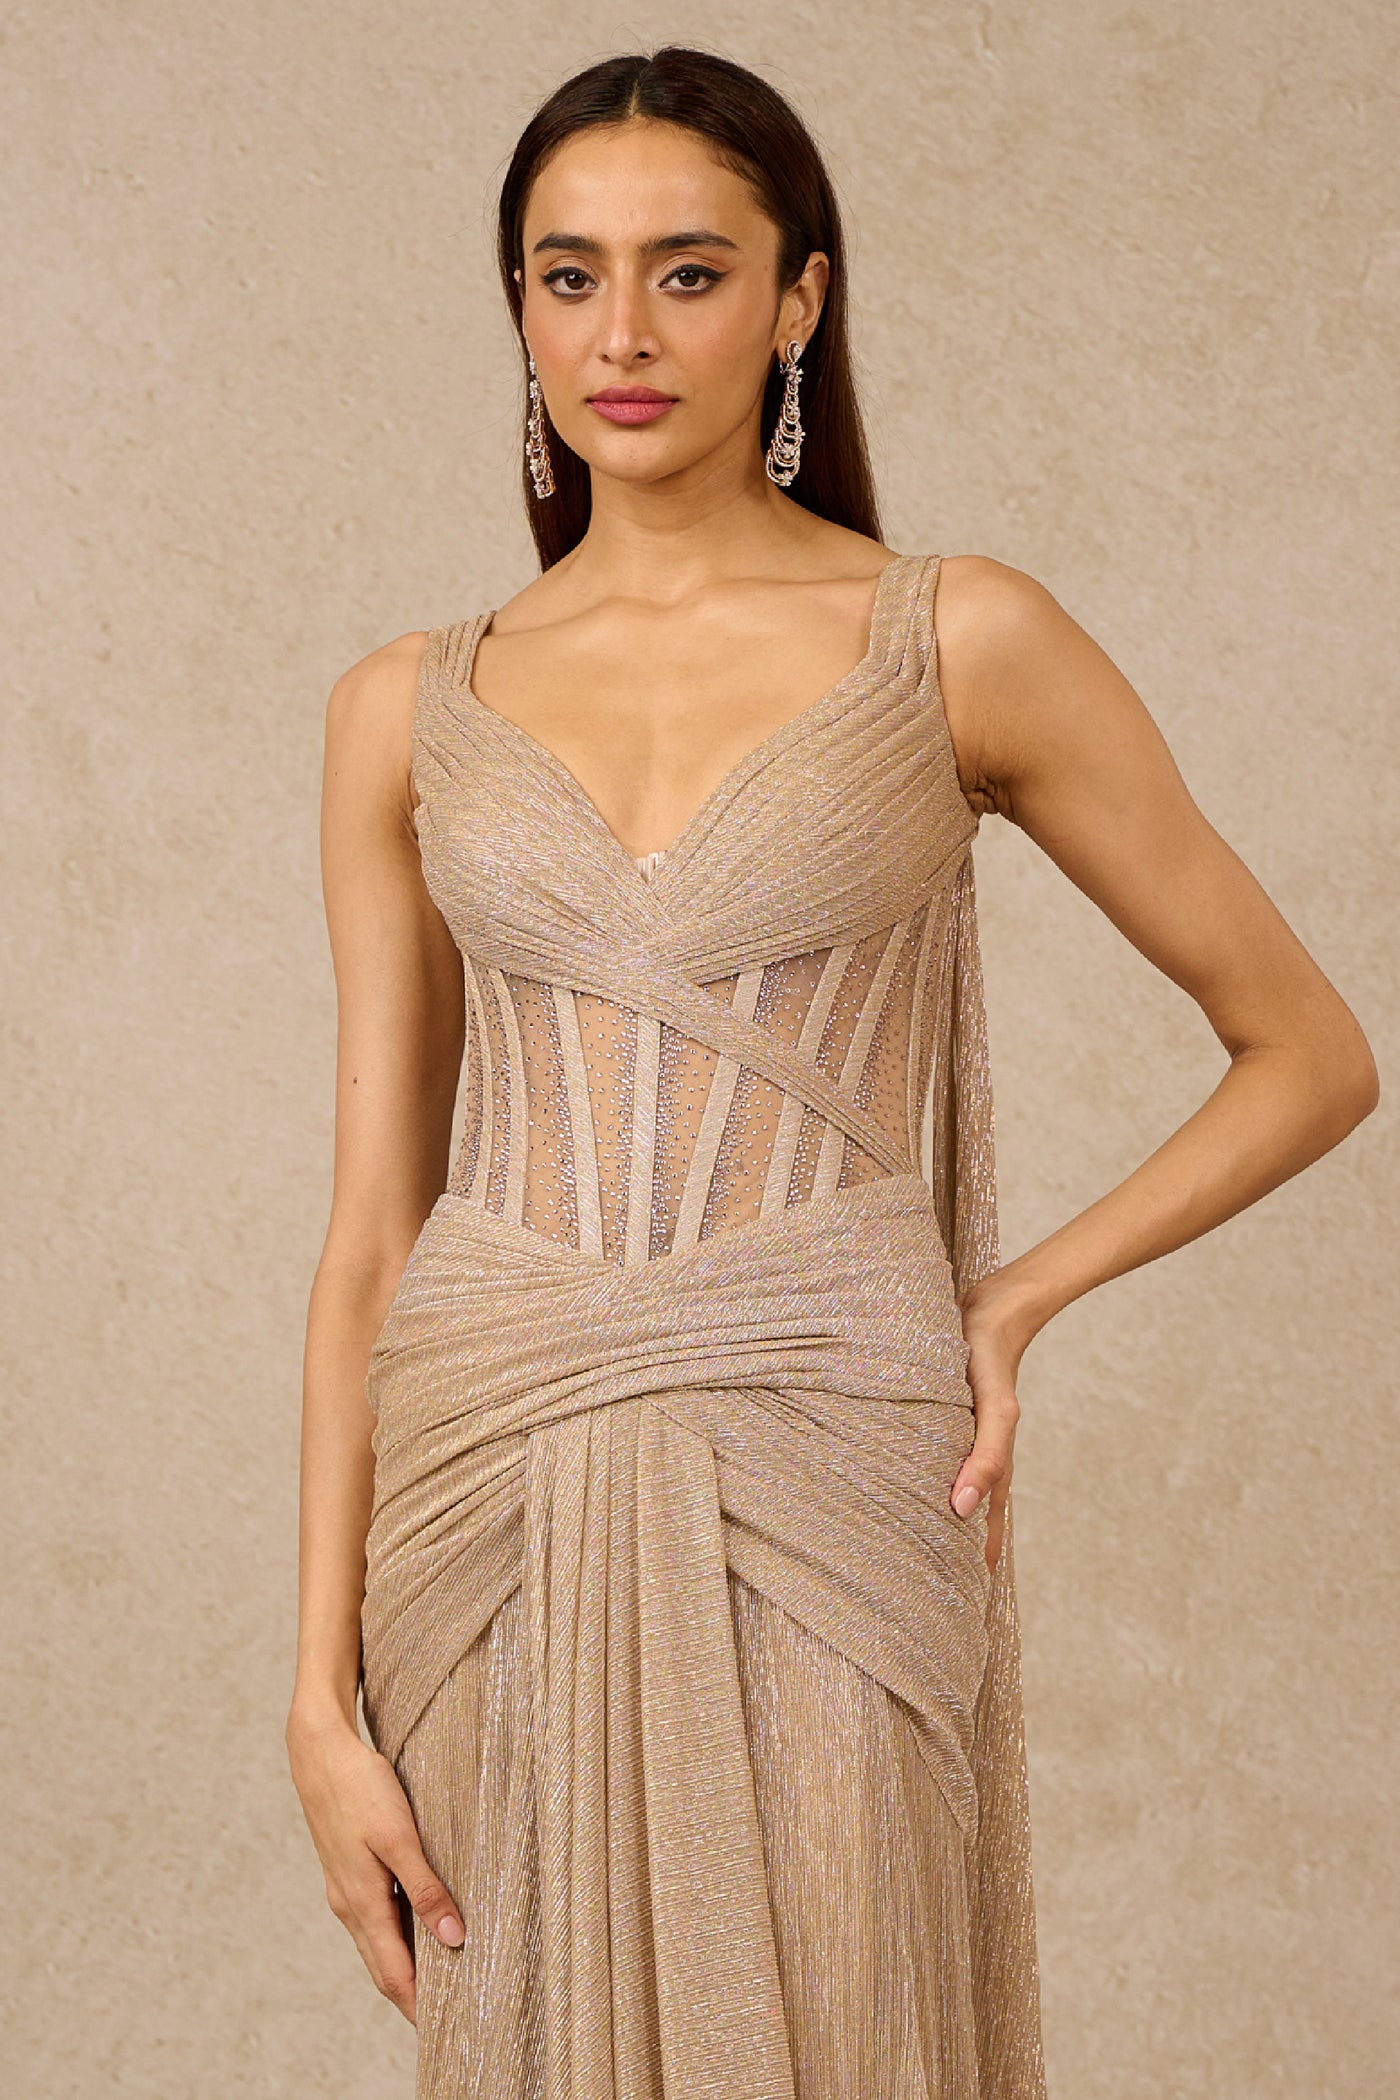 Tarun Tahiliani Gown Champagne Indian designer wear online shopping melange singapore